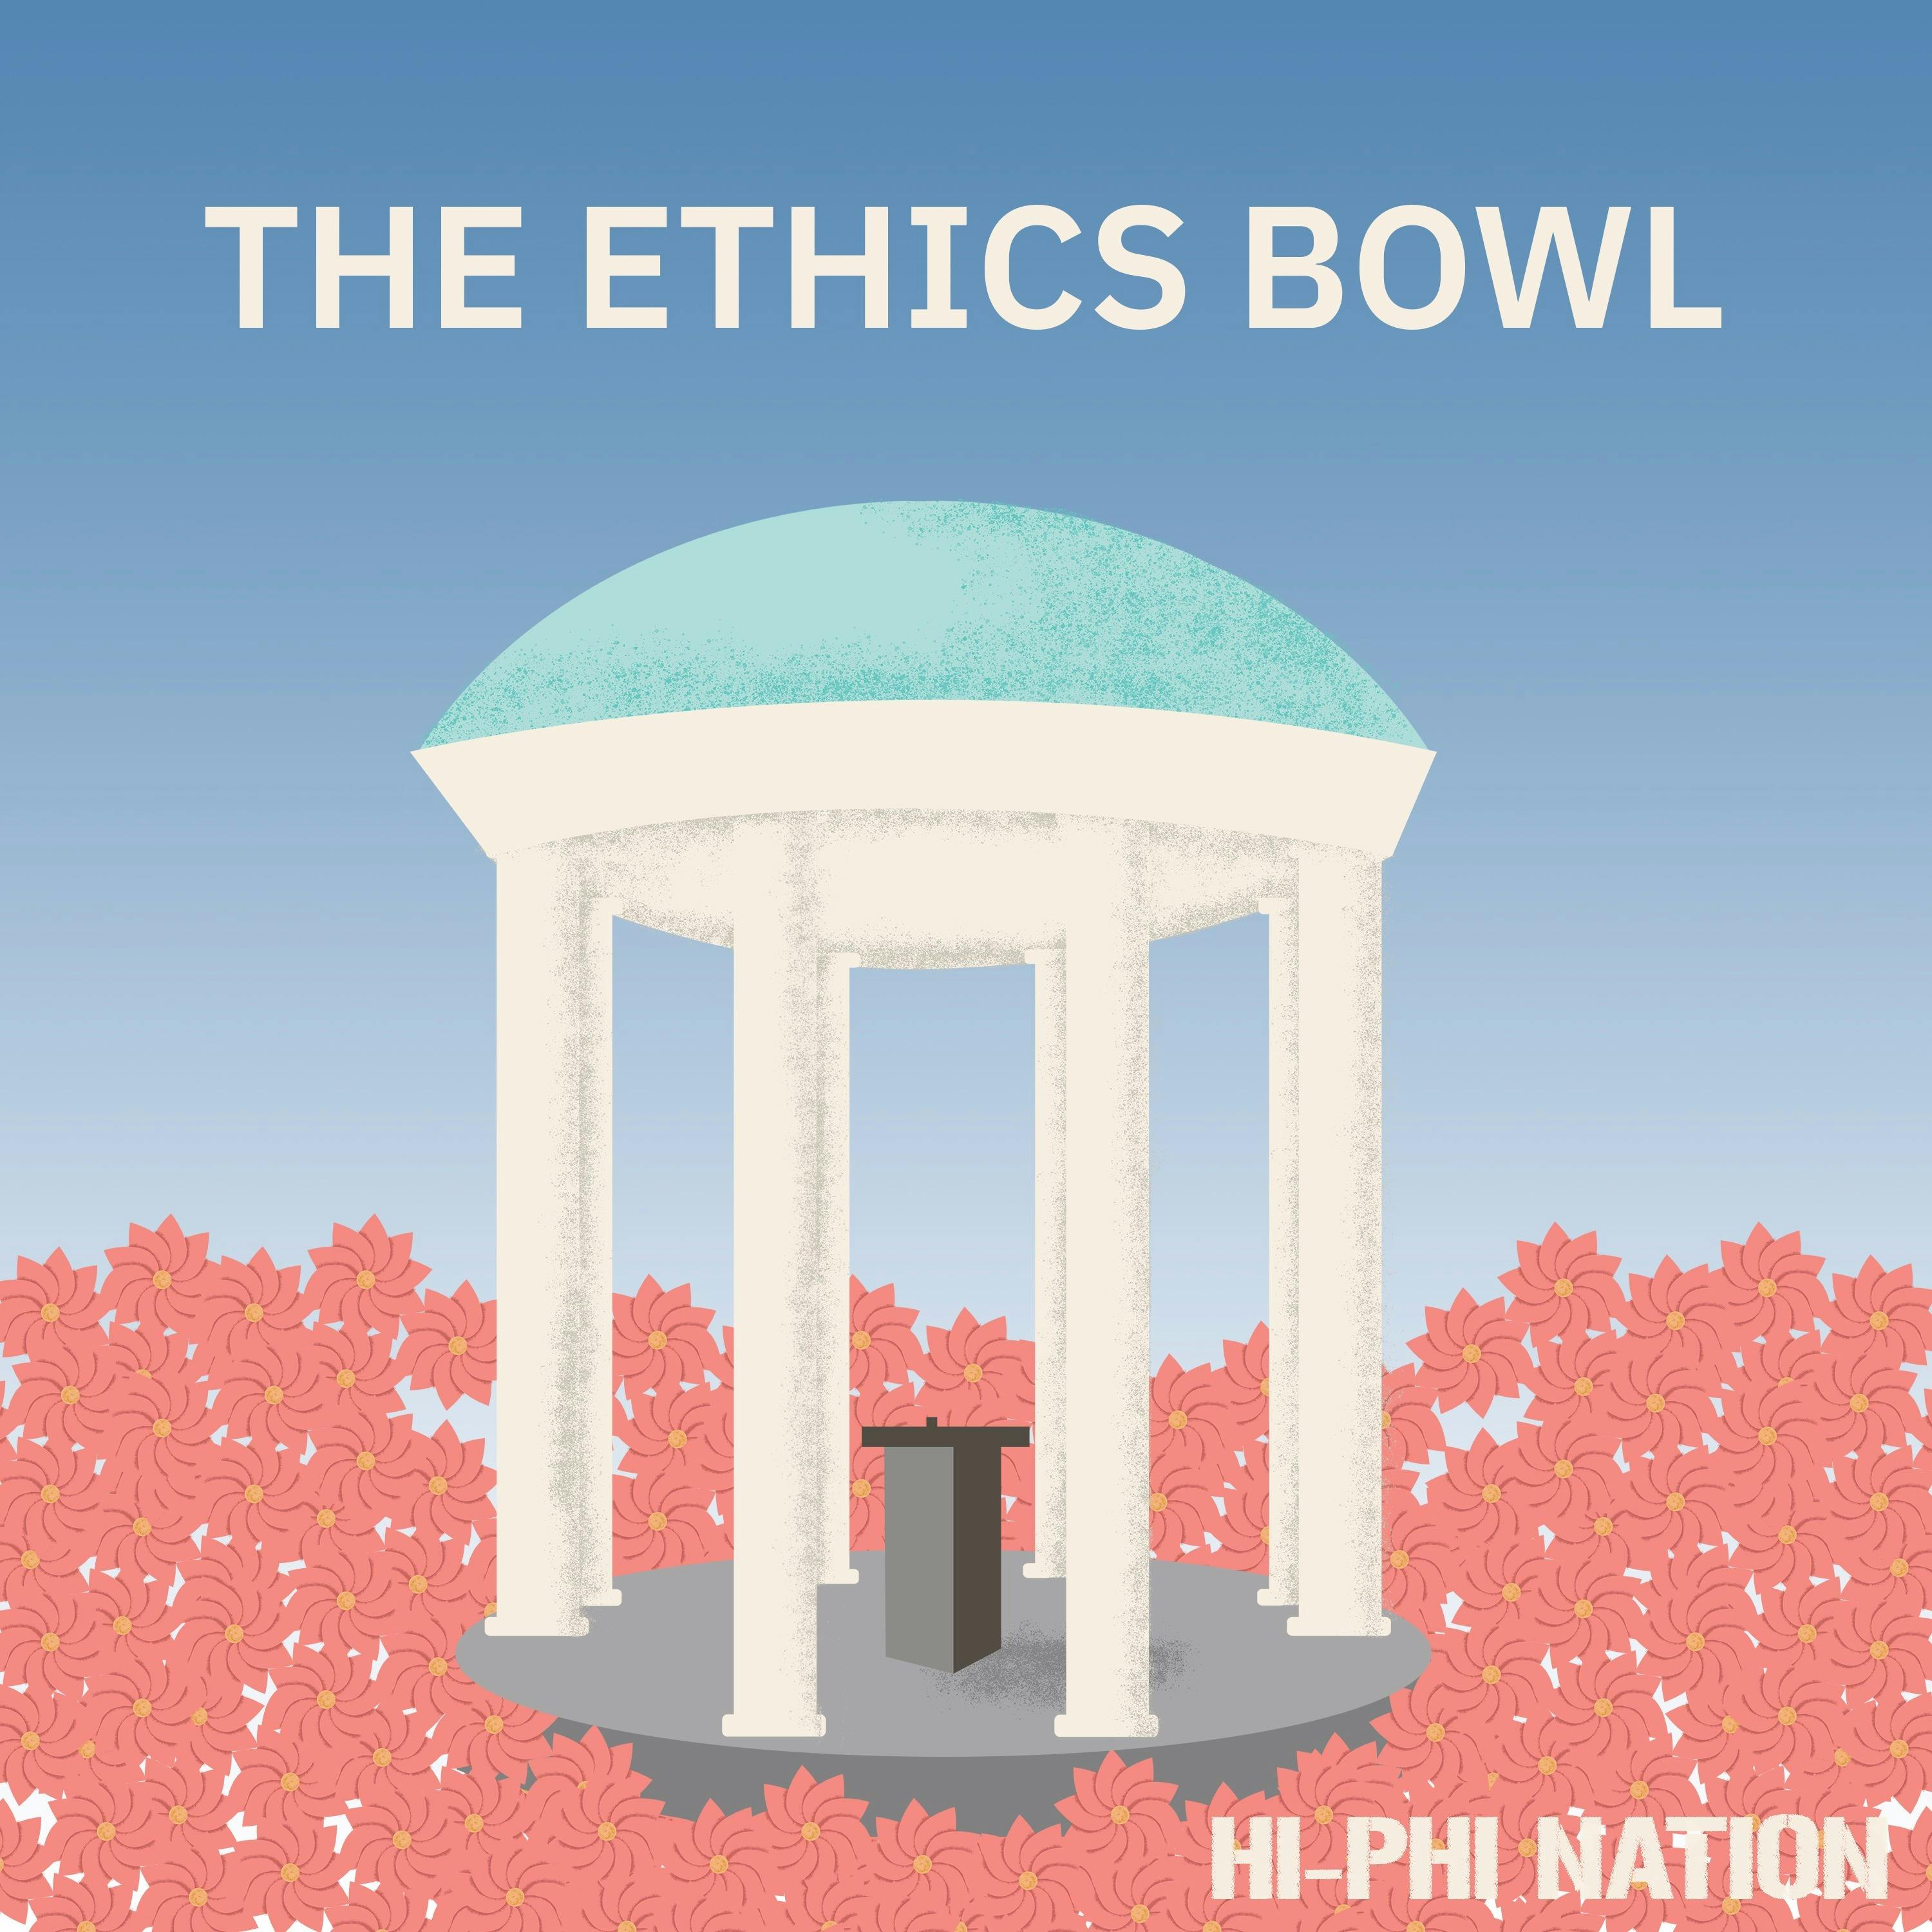 Hi-Phi Nation